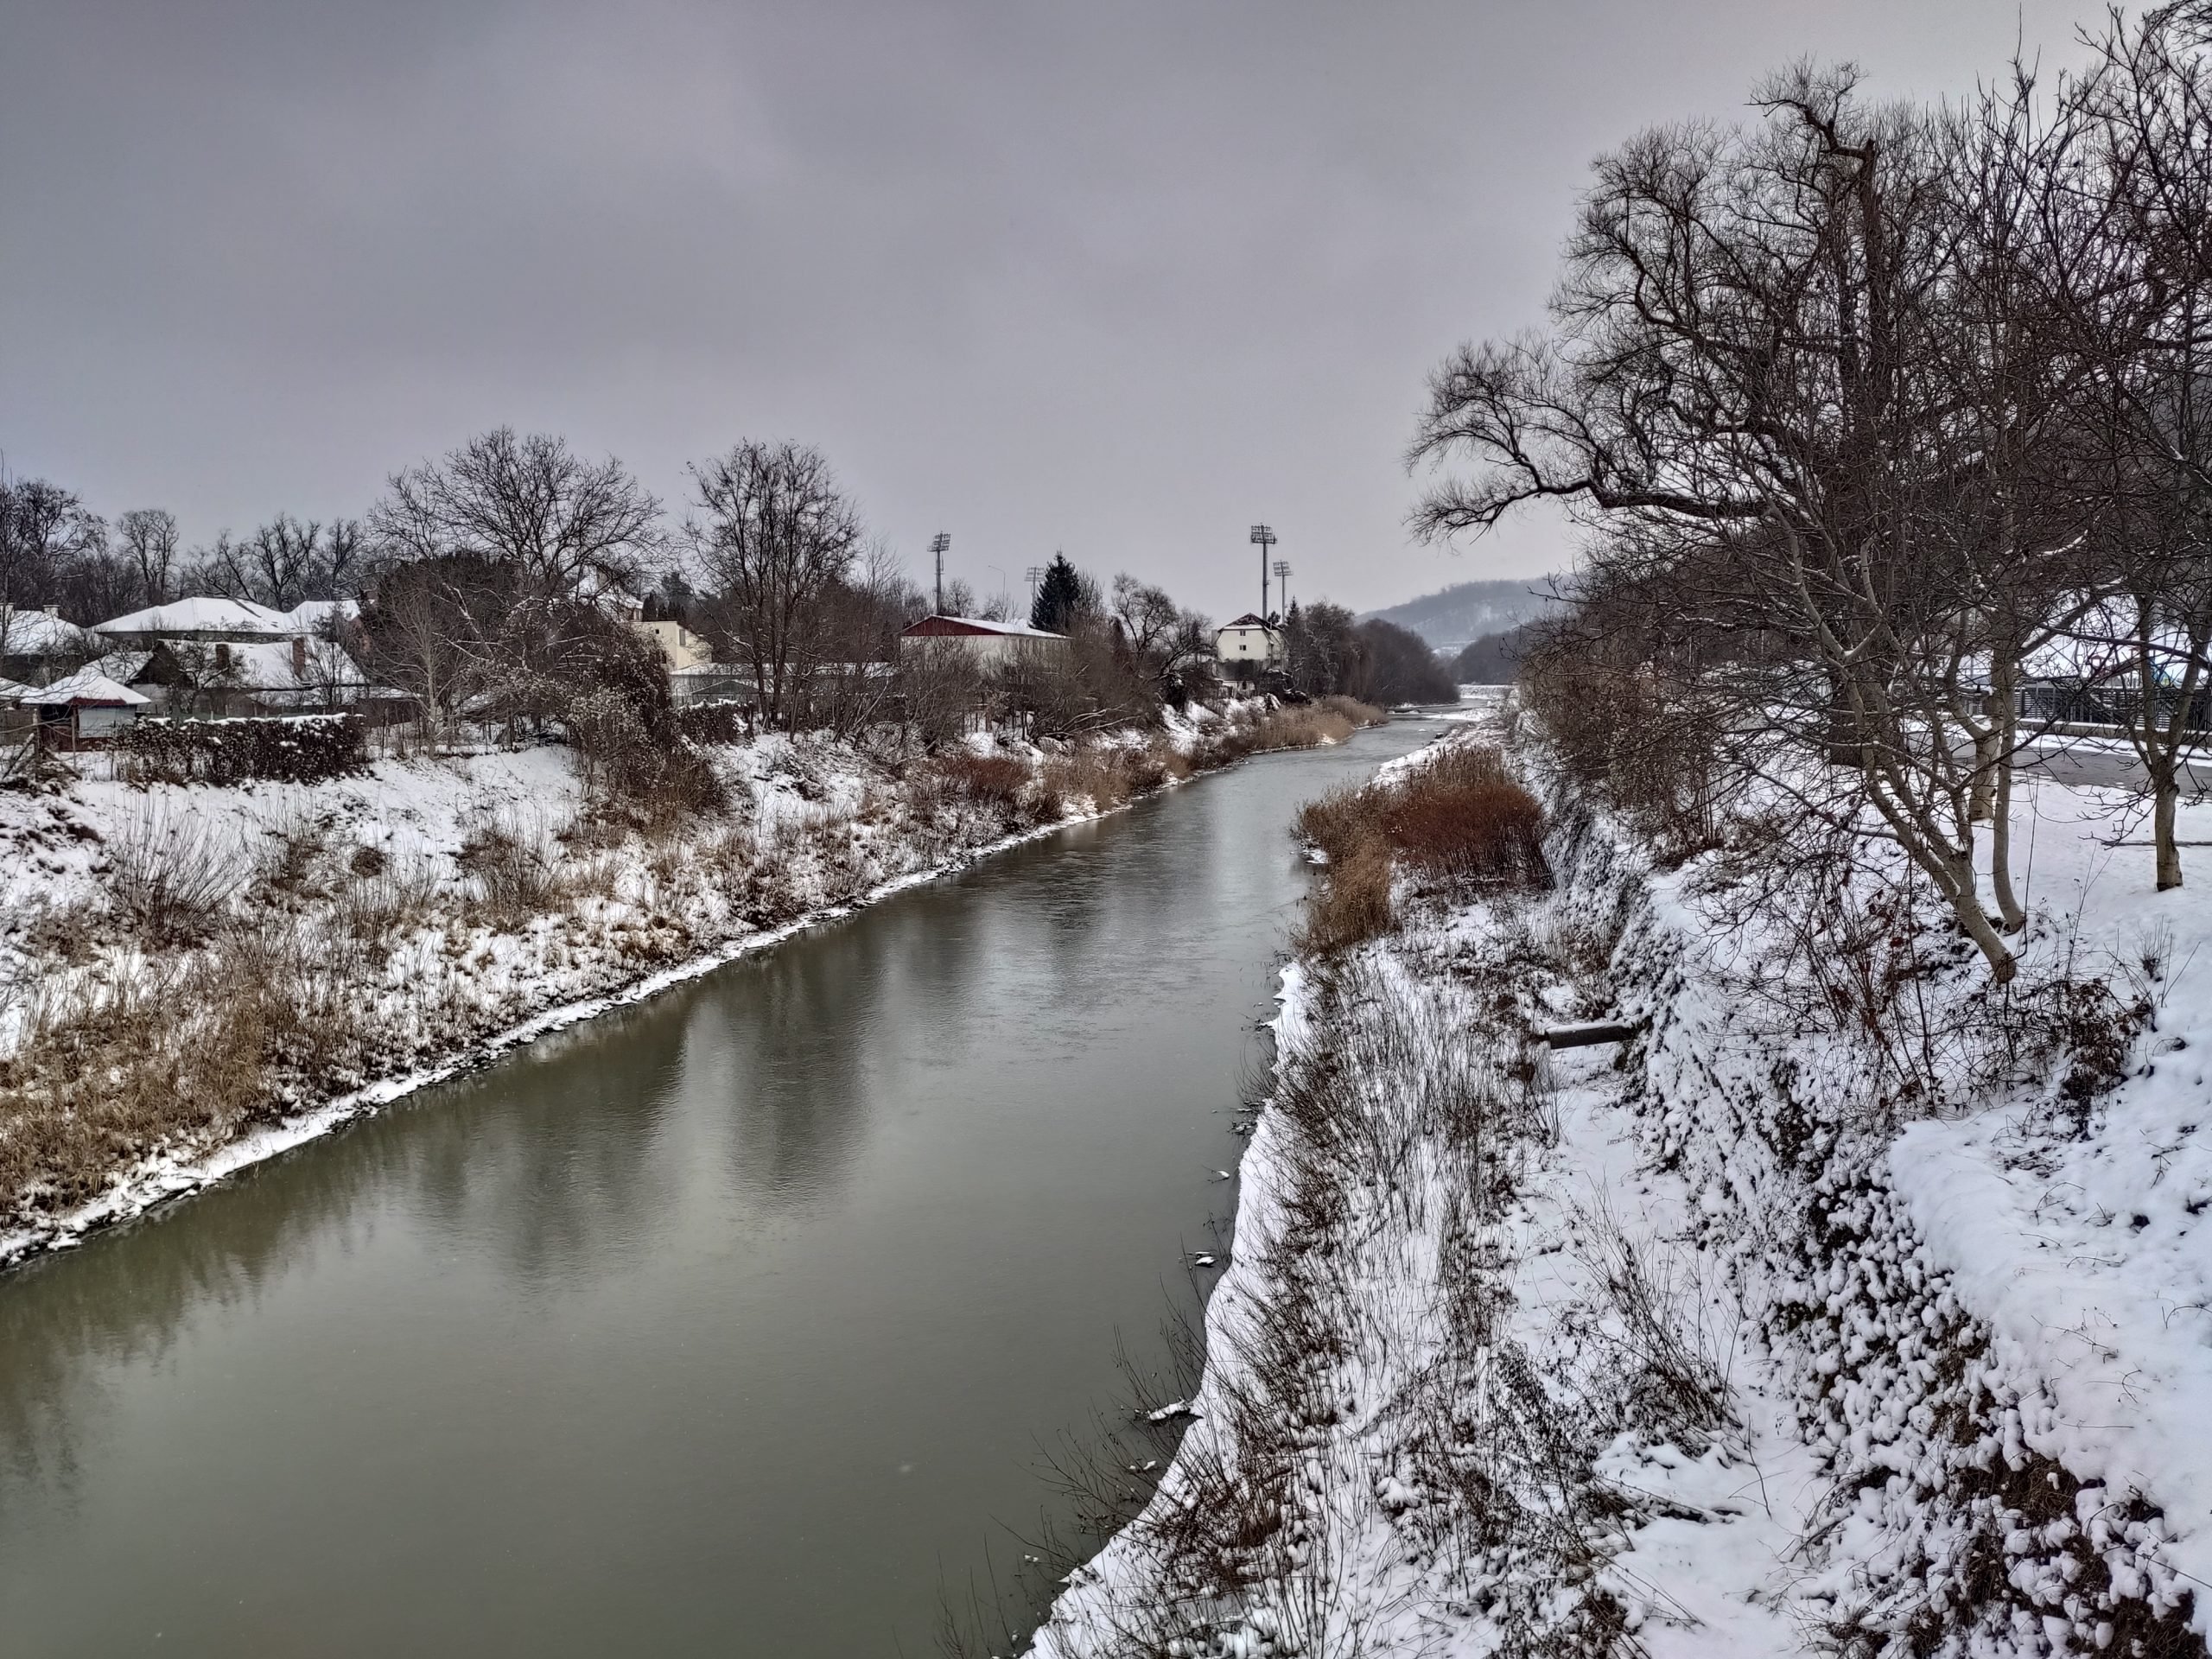  Au murit cei doi frați care au căzut în râul Bistriţa în timp ce se dădeau pe gheață